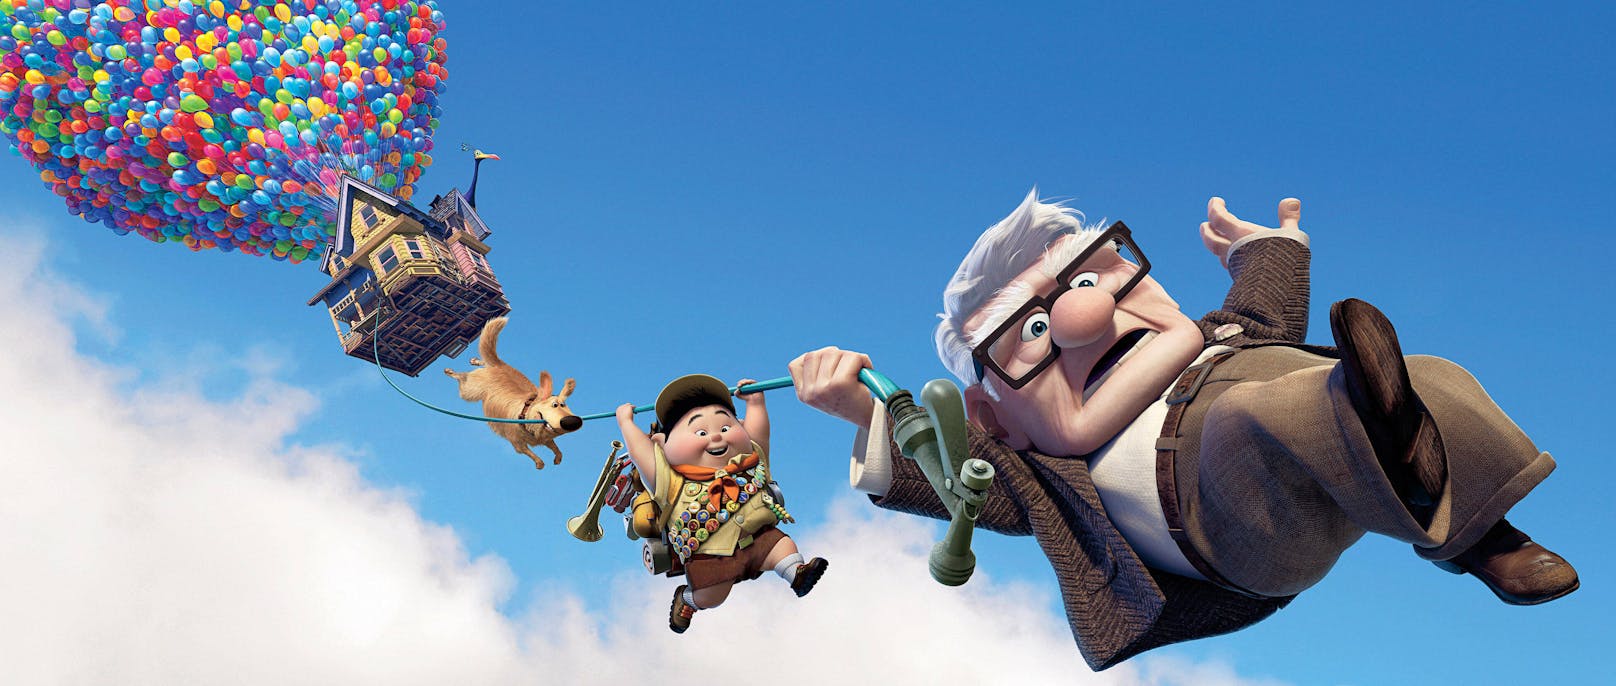 Der Pixar-Hit<em> "Oben"</em> von 2009 lässt laut Umfrage mehr Männern ans Herz.